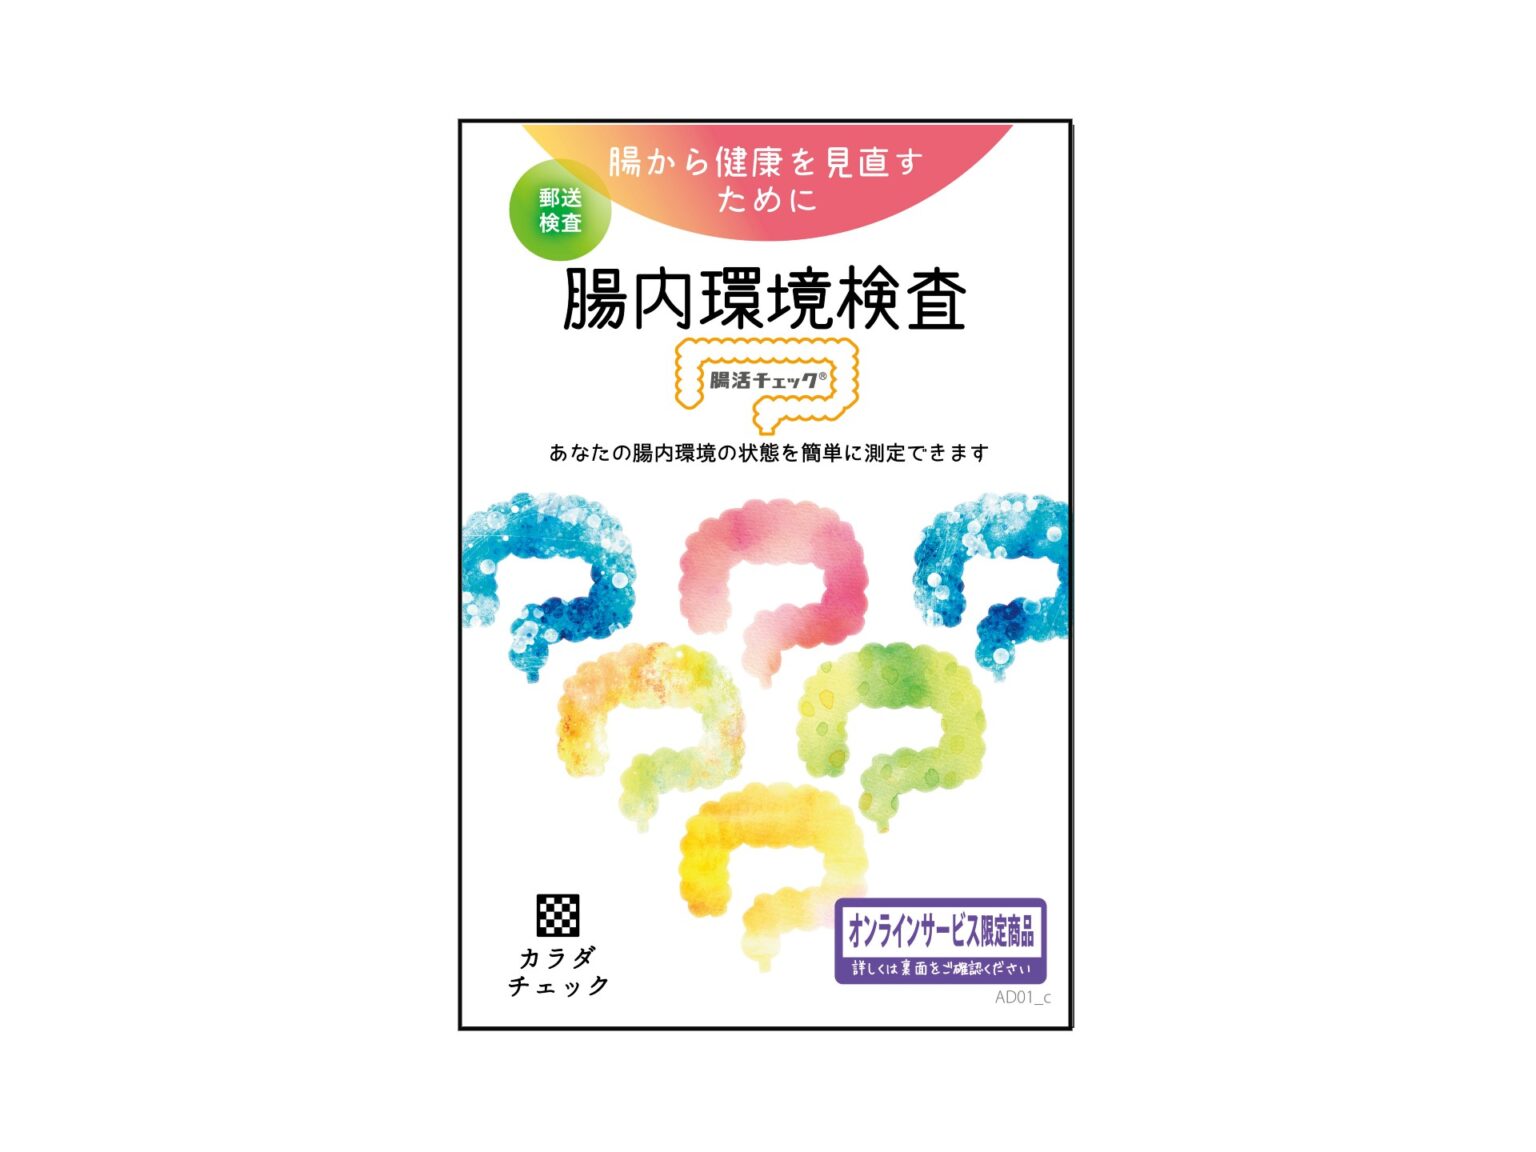 「腸内環境検査「腸活チェック」」3,025円